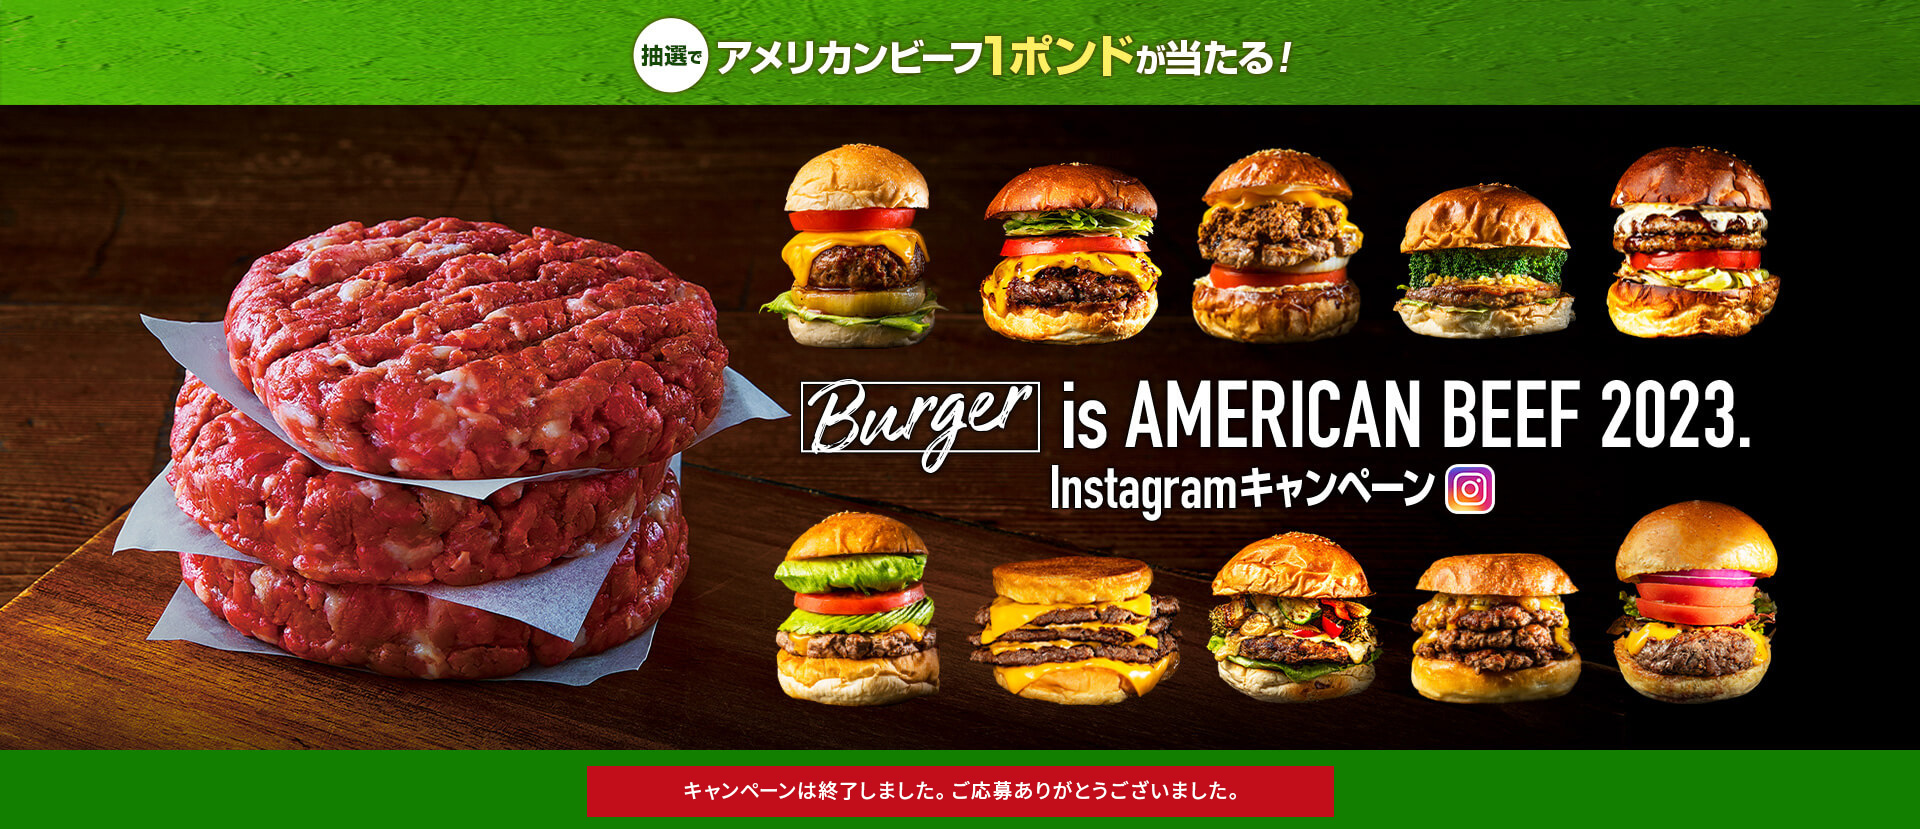 抽選でアメリカンビーフ1ポンドが当たる！ 撮って、食べて、当てよう！ Burger is AMERICAN BEEF 2023. Instagramキャンペーン キャンペーン期間 2023年8月1日（火）〜9月30日（土）